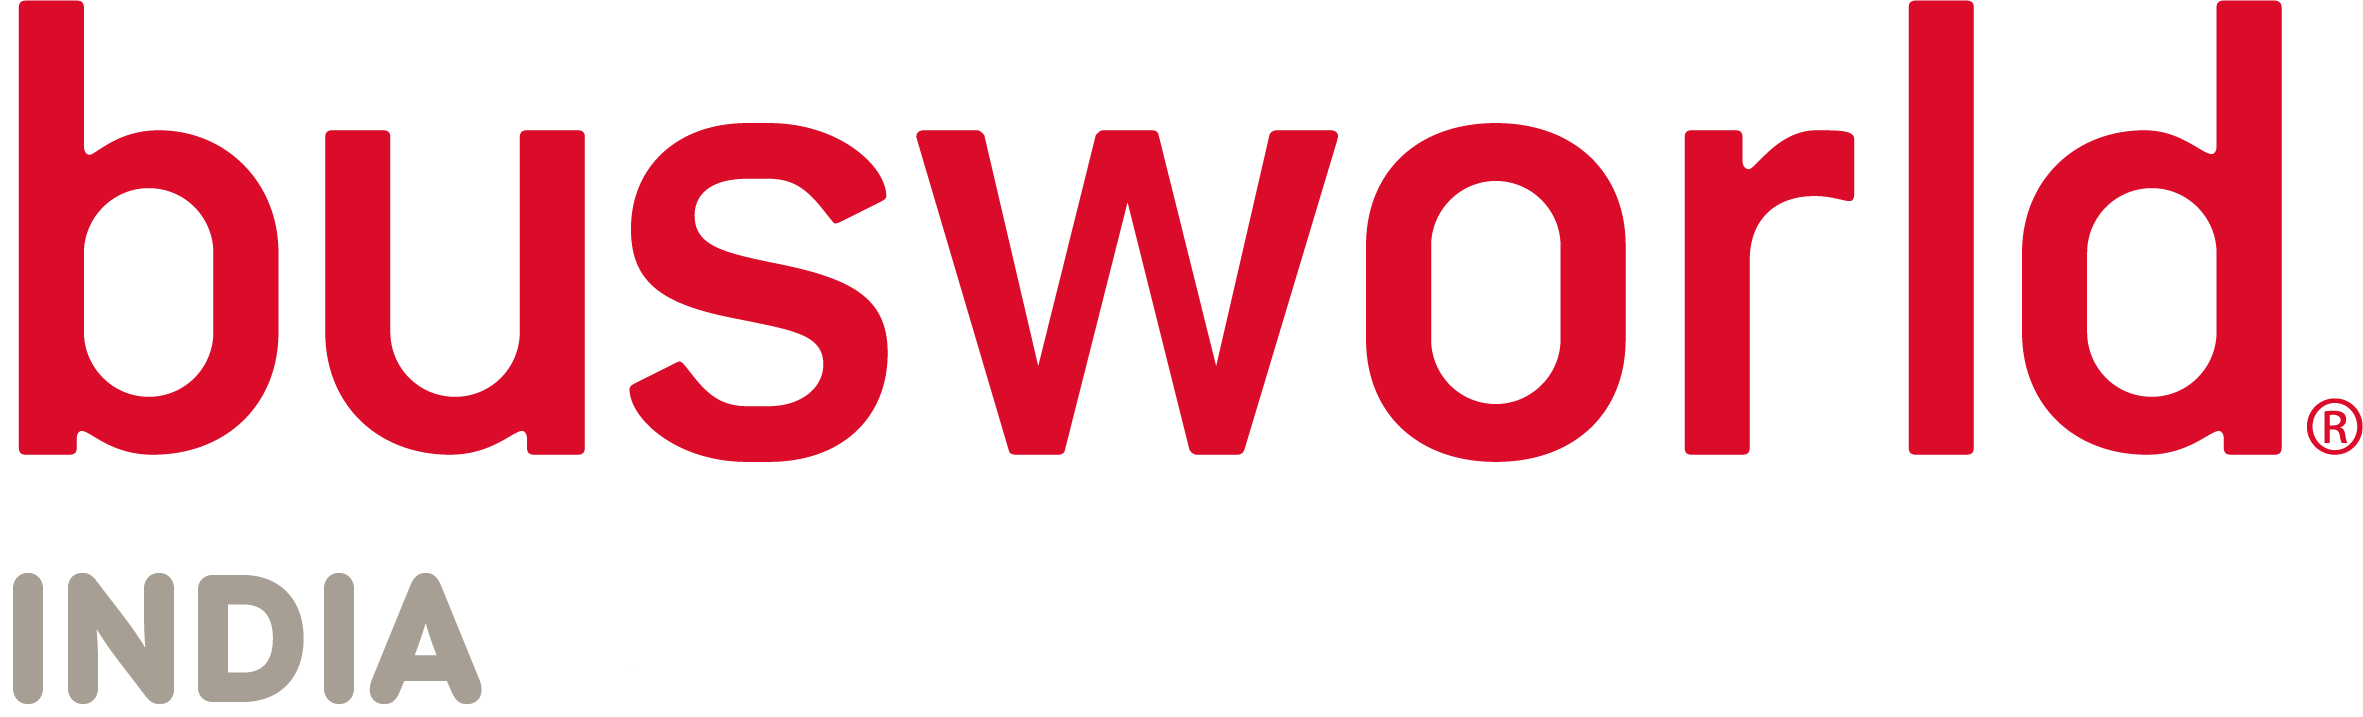 Busworld India logo